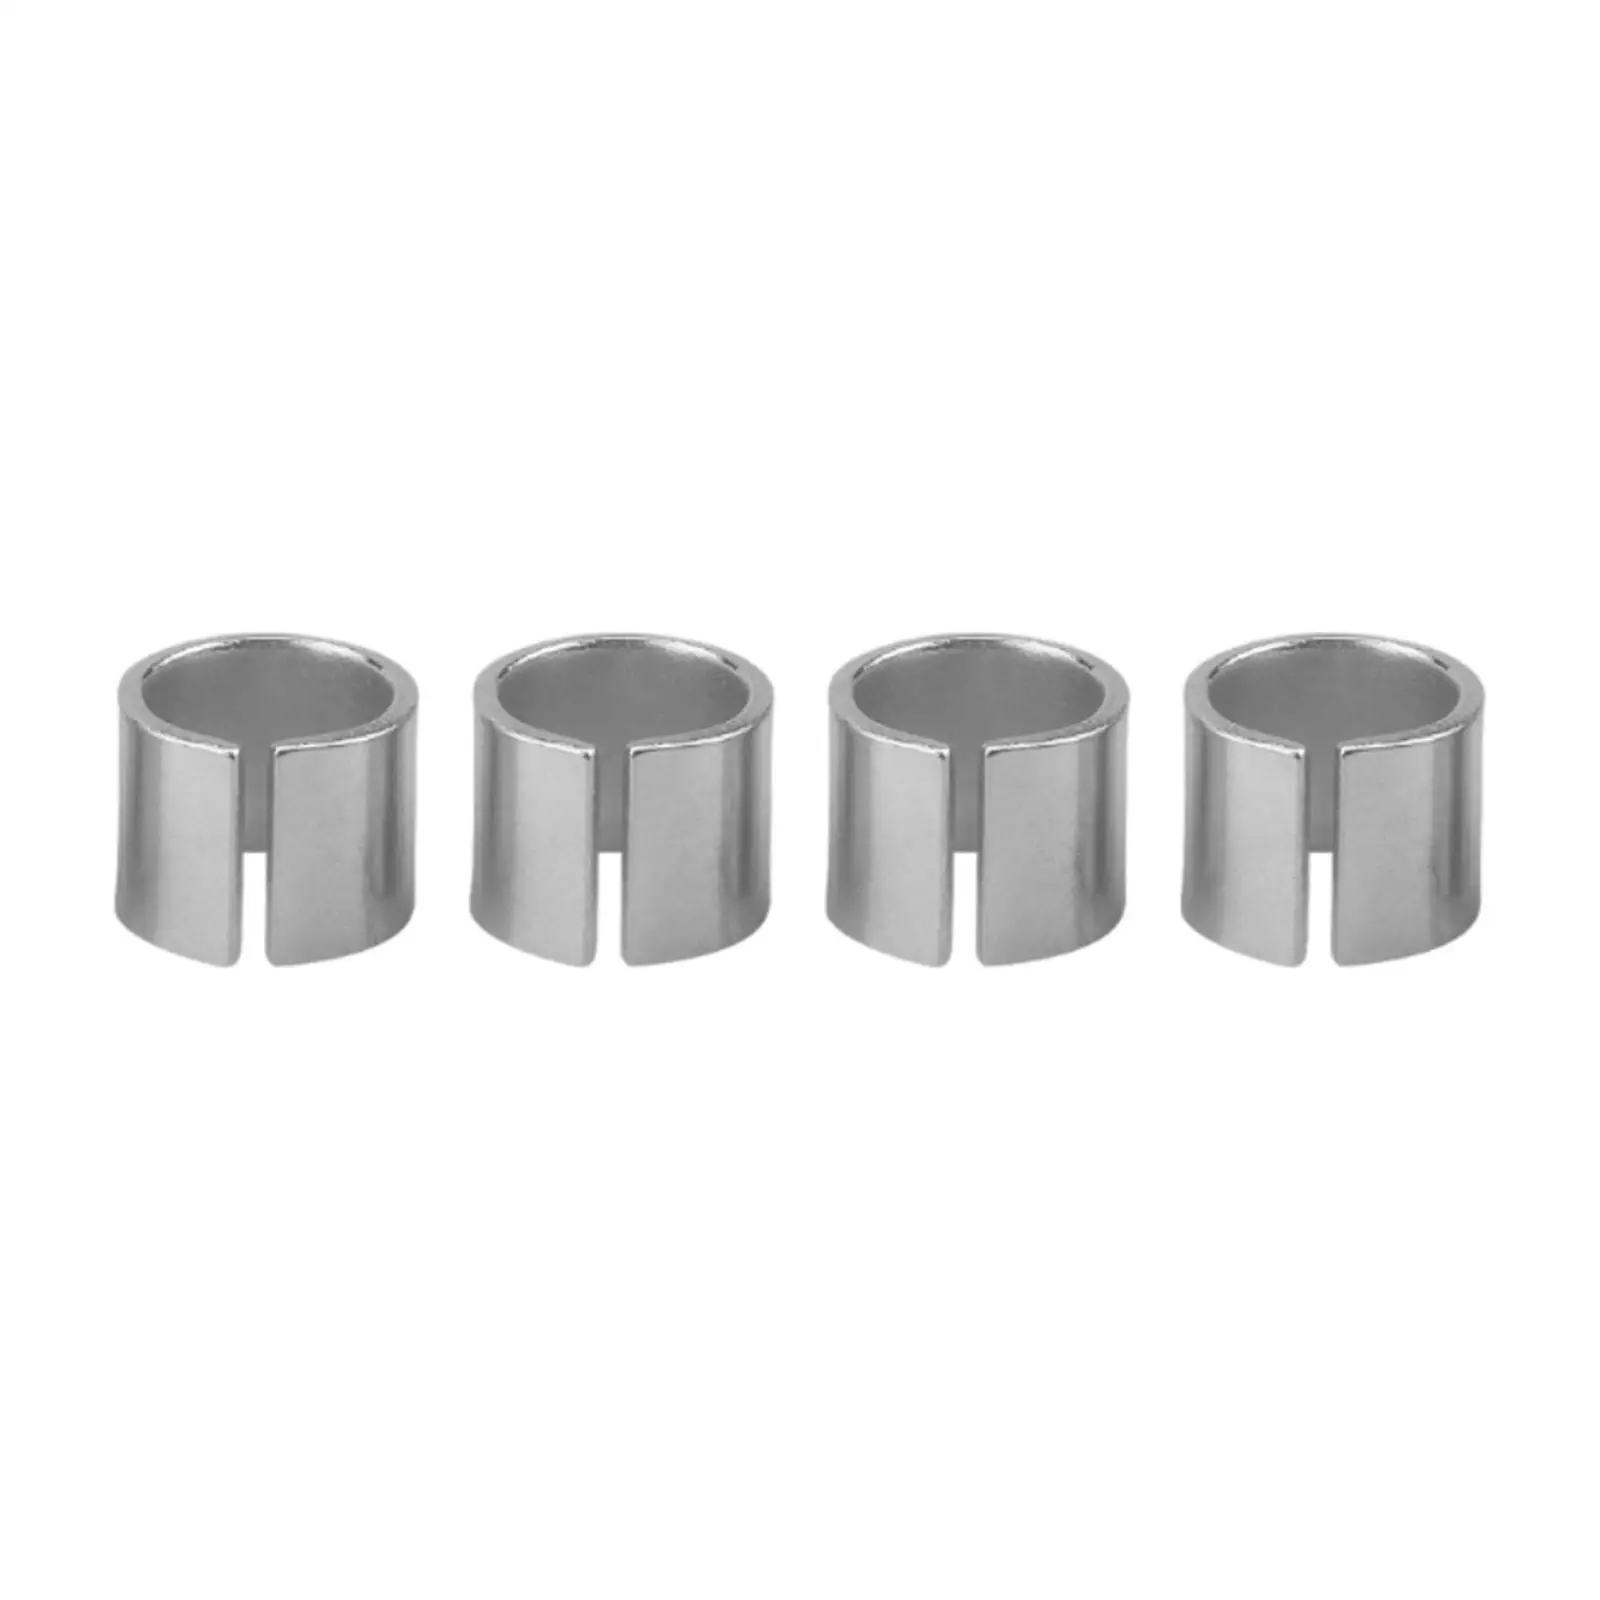 4 Pieces Cylinder Head Dowel Pin Head Dowel Alignment Pin for Chevy ls LT Lq9 LS6 LS1 LS3 LS2 Lq4 Chevy Accessory